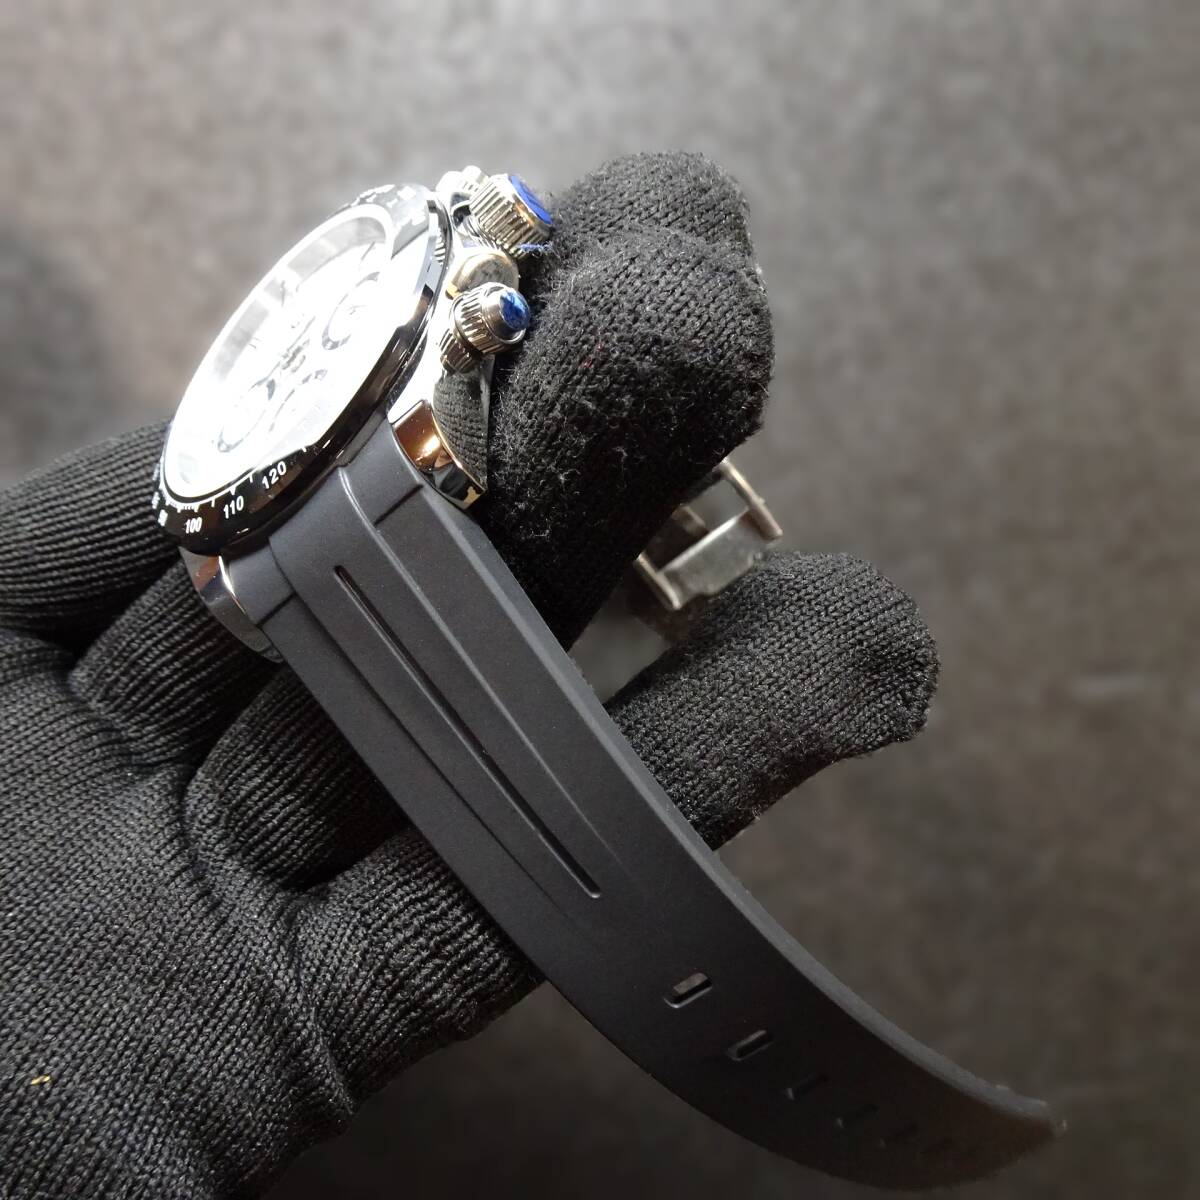 送料無料・新品・パガーニデザイン・メンズ・セイコー製VK63クロノグラフクオーツ式腕時計・オマージュウオッチ・ラバーストラップPD-1644 の画像9